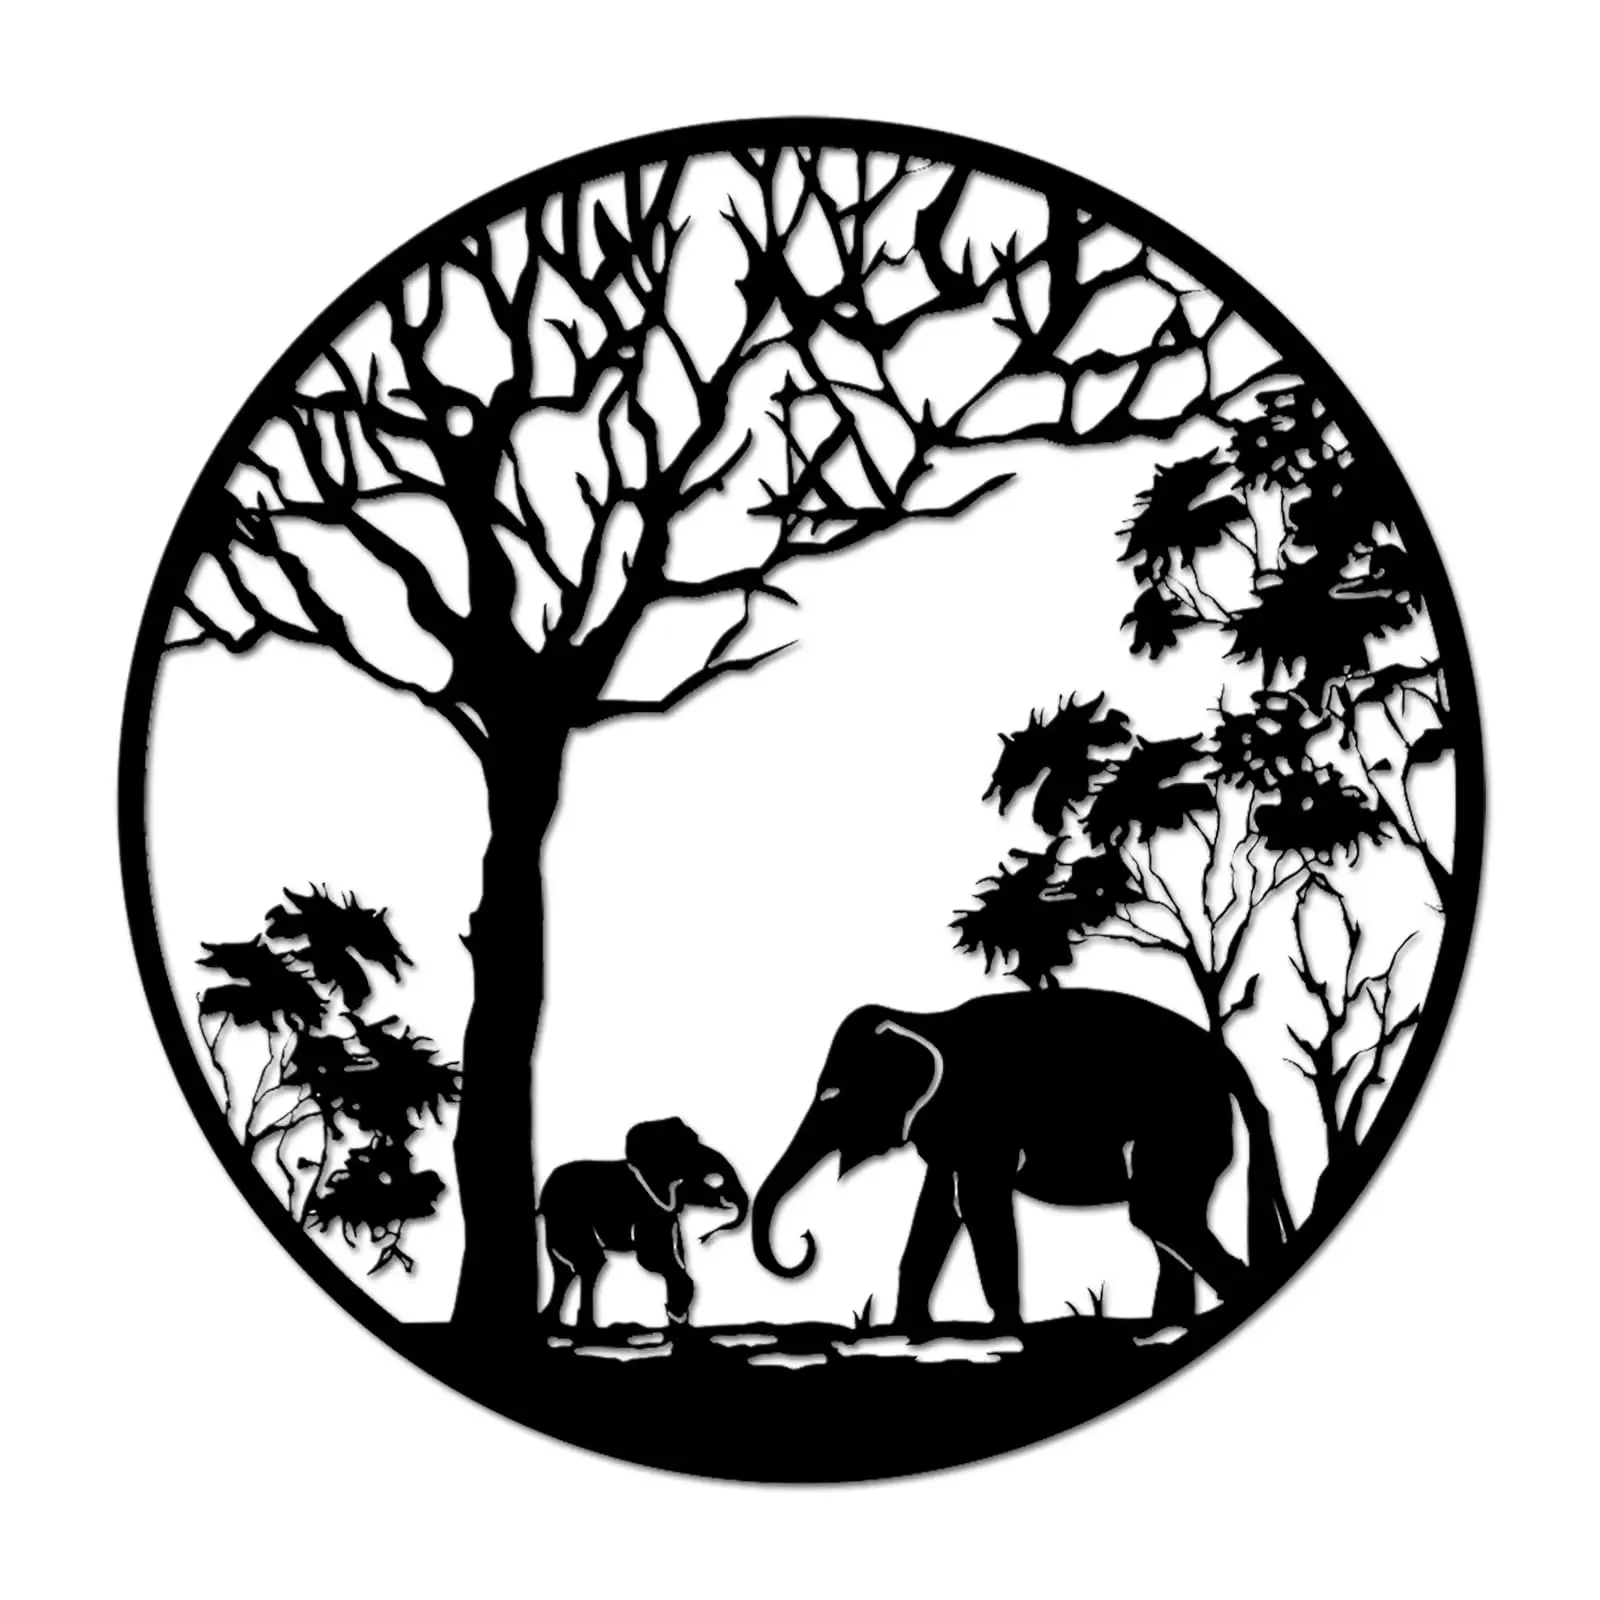 ديكور منزلي ومكتب عصري من المنتجات الأكثر مبيعًا في المصنع لعام 2024 لوحة فنية حائطية معدنية للفيل والحيوانات الأفريقية لفن الرسم على الحائط معدنية